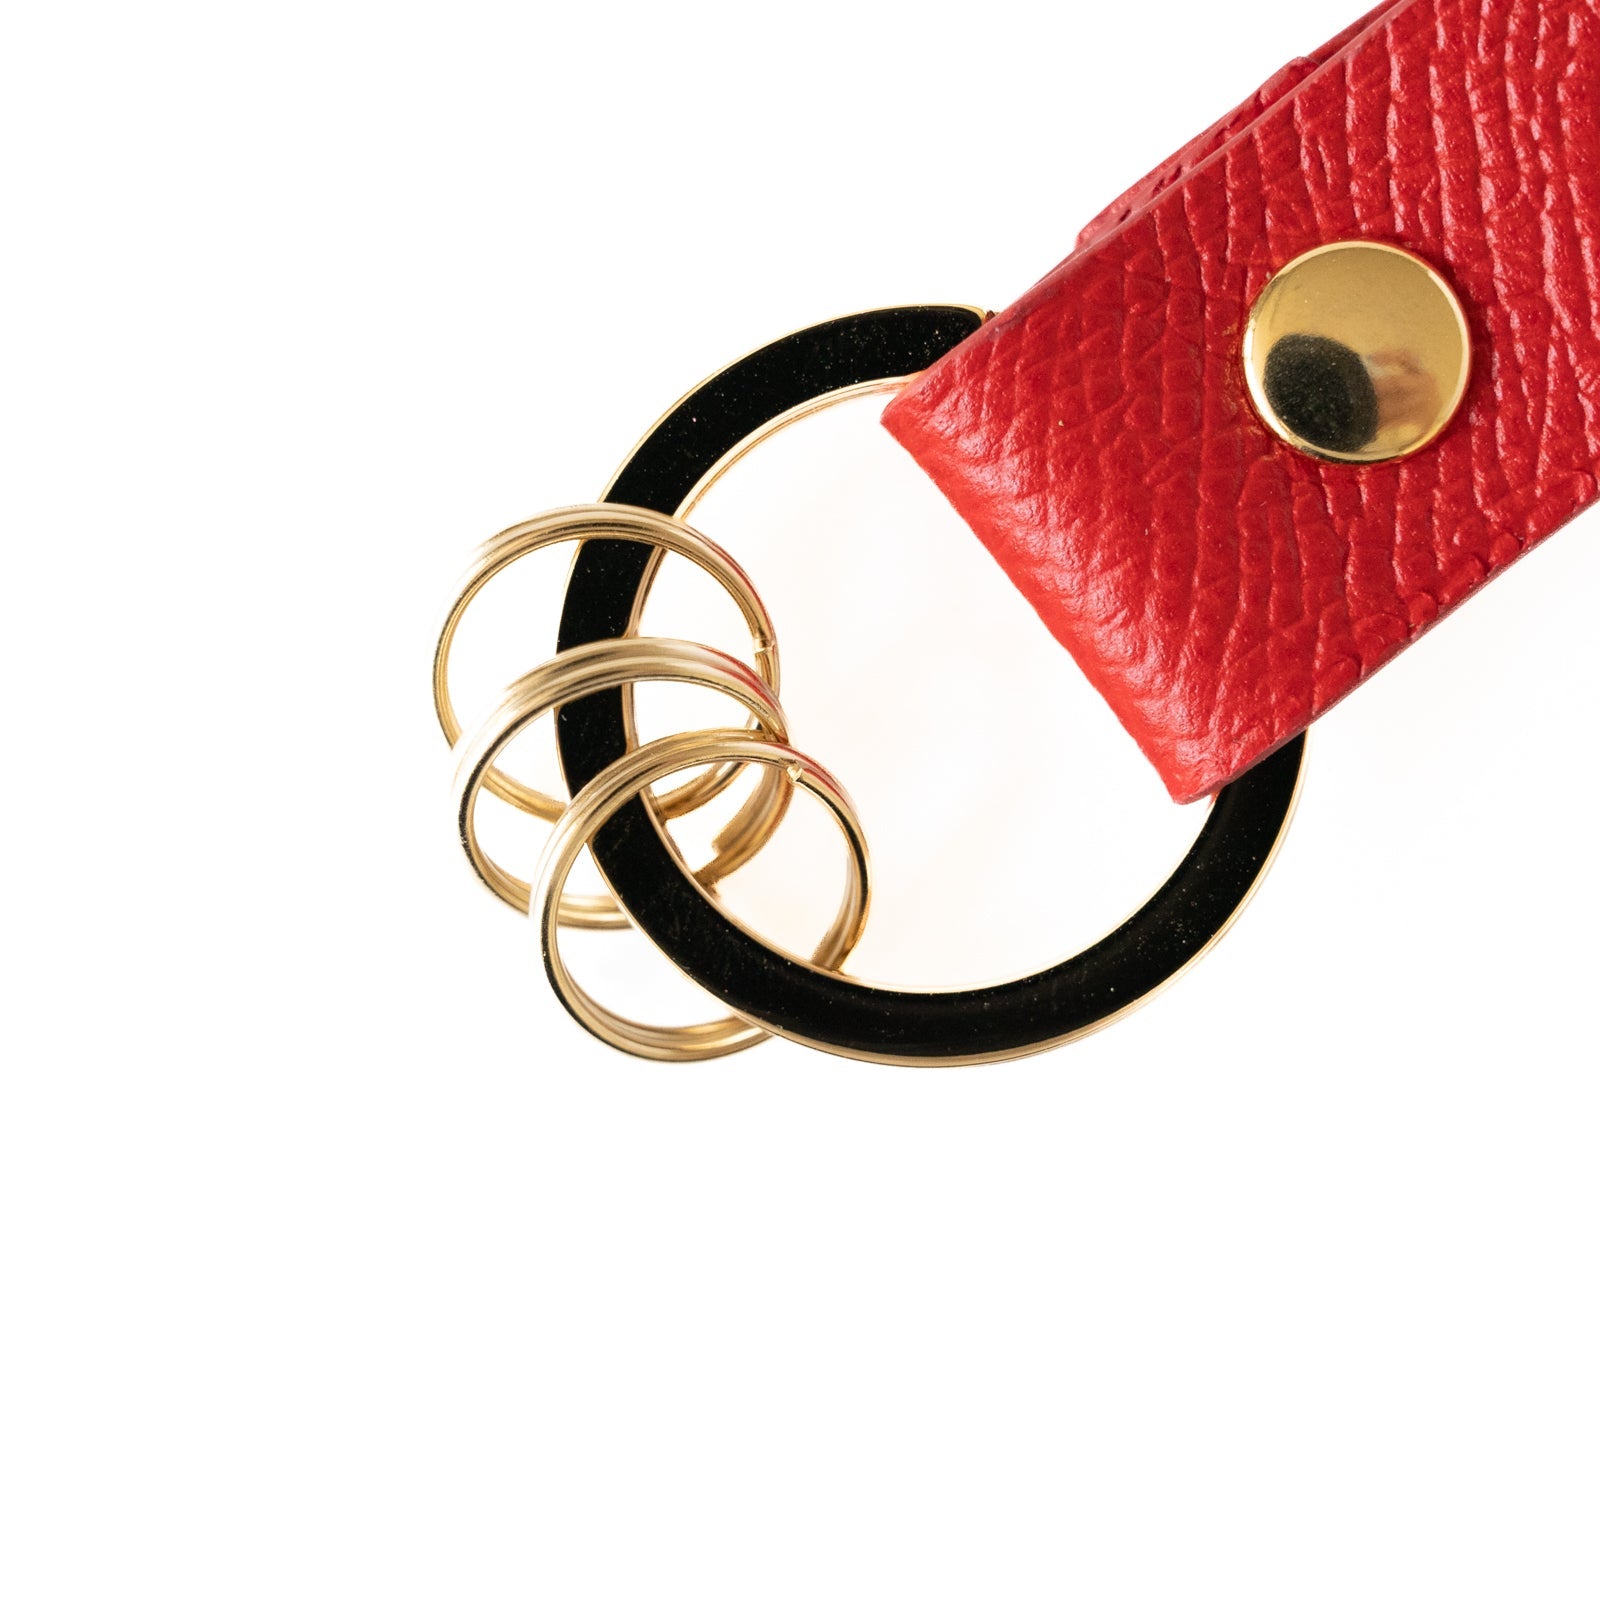 Leather key ring /Veau Epsom